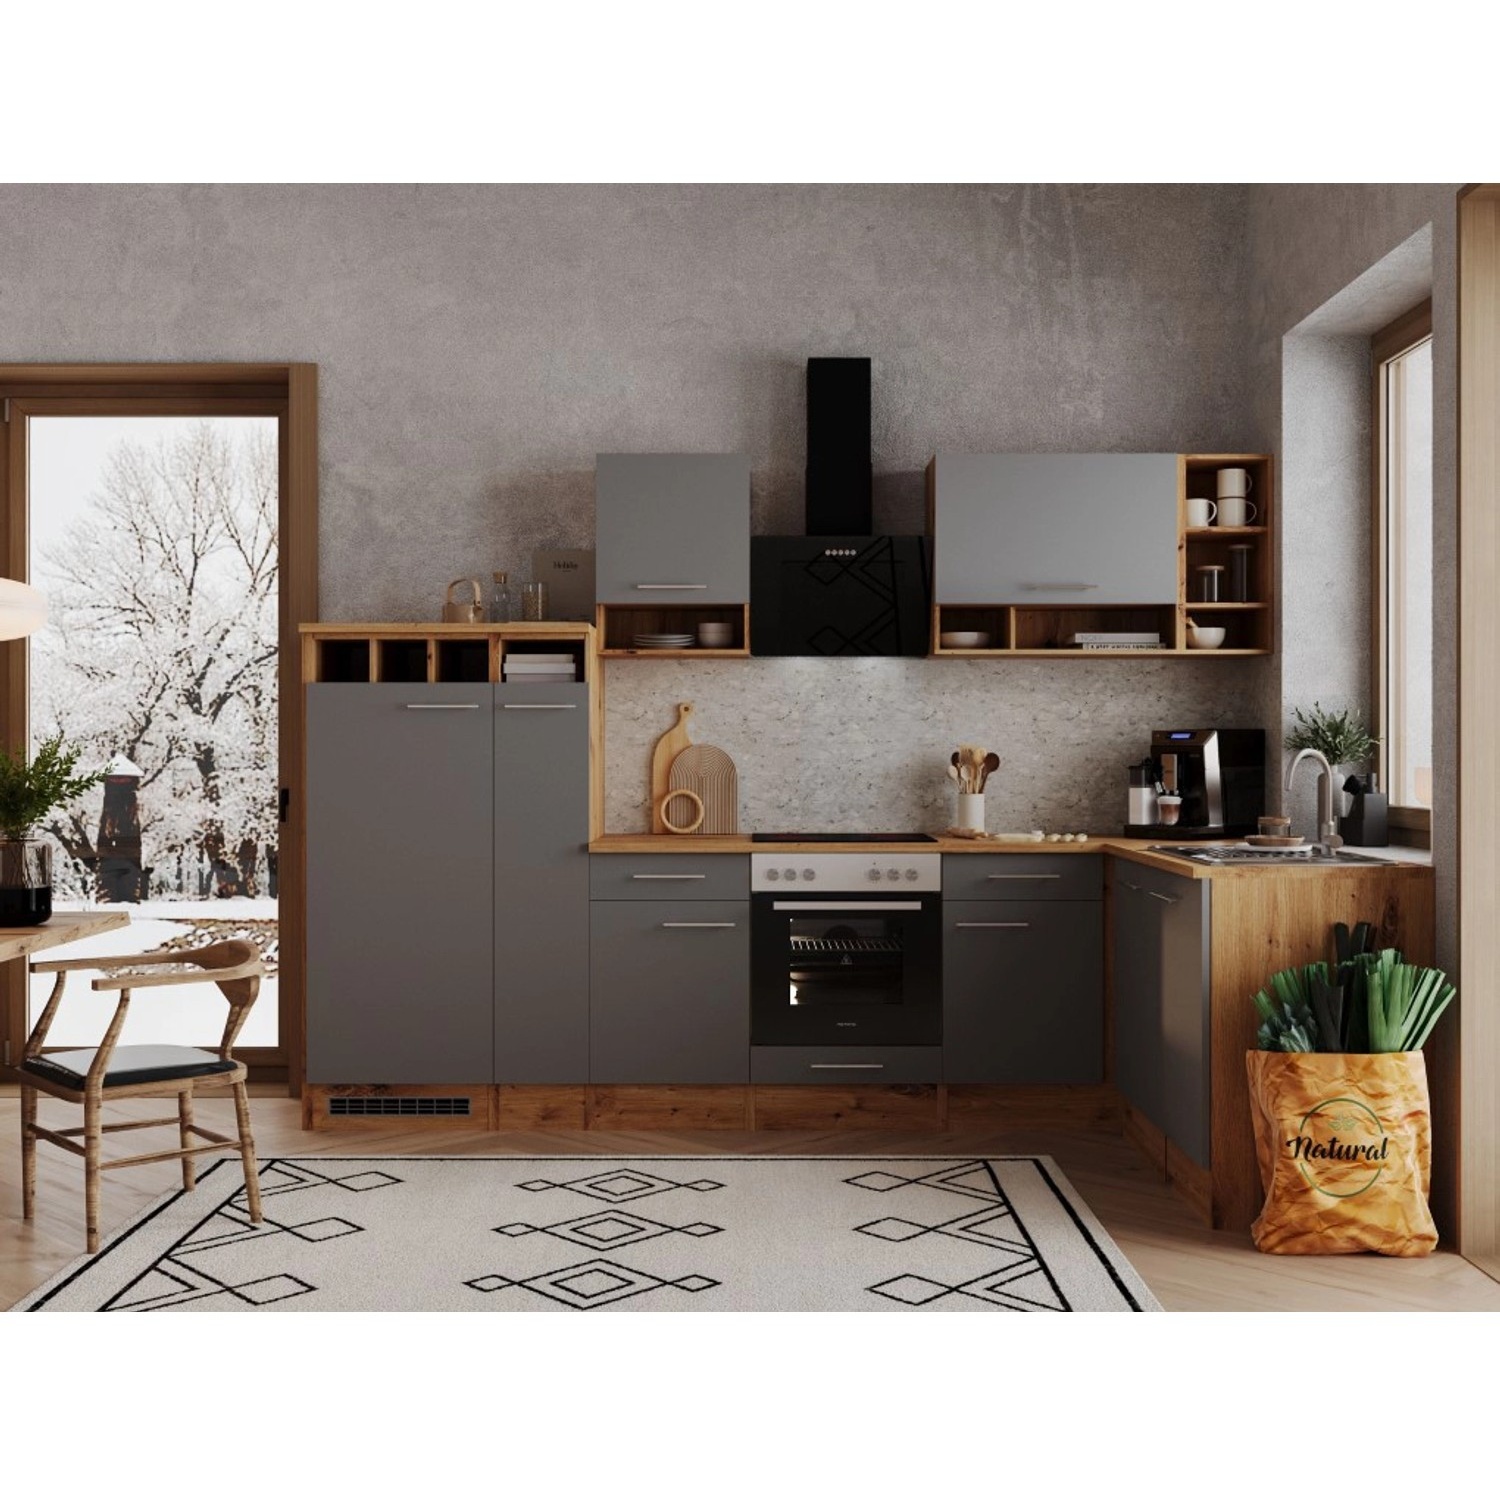 Bild von Winkelküche Hilde L-Form E-Geräte 310 x 172 cm grau/wildeiche nachbildung